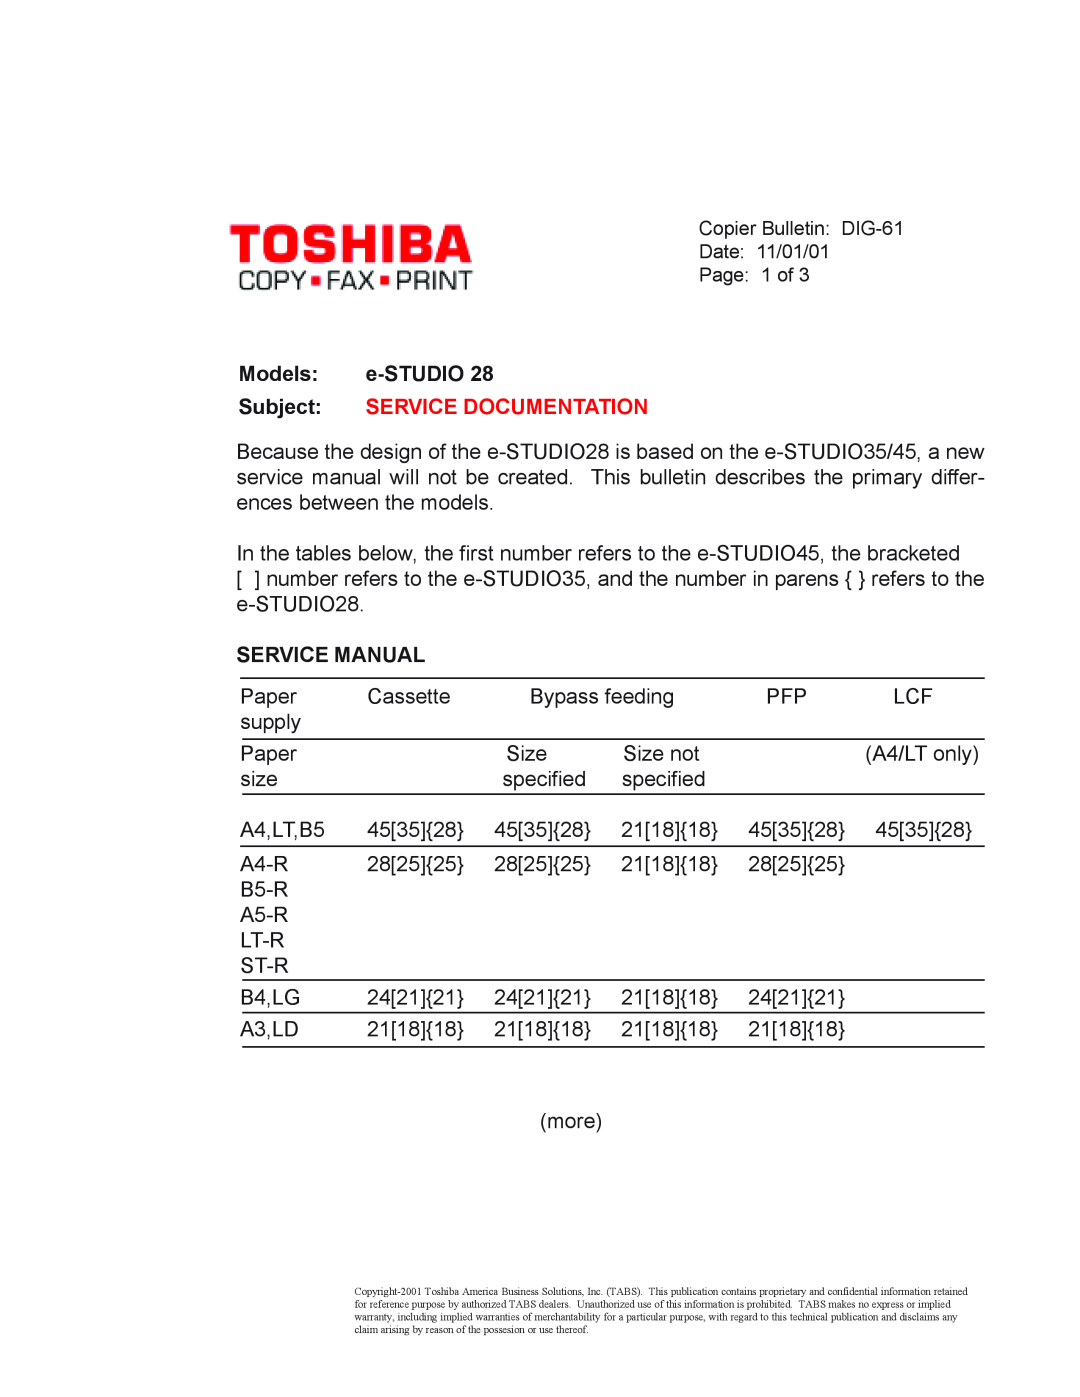 Toshiba 28 warranty Models e-STUDIO, Service Manual, Subject SERVICE DOCUMENTATION 